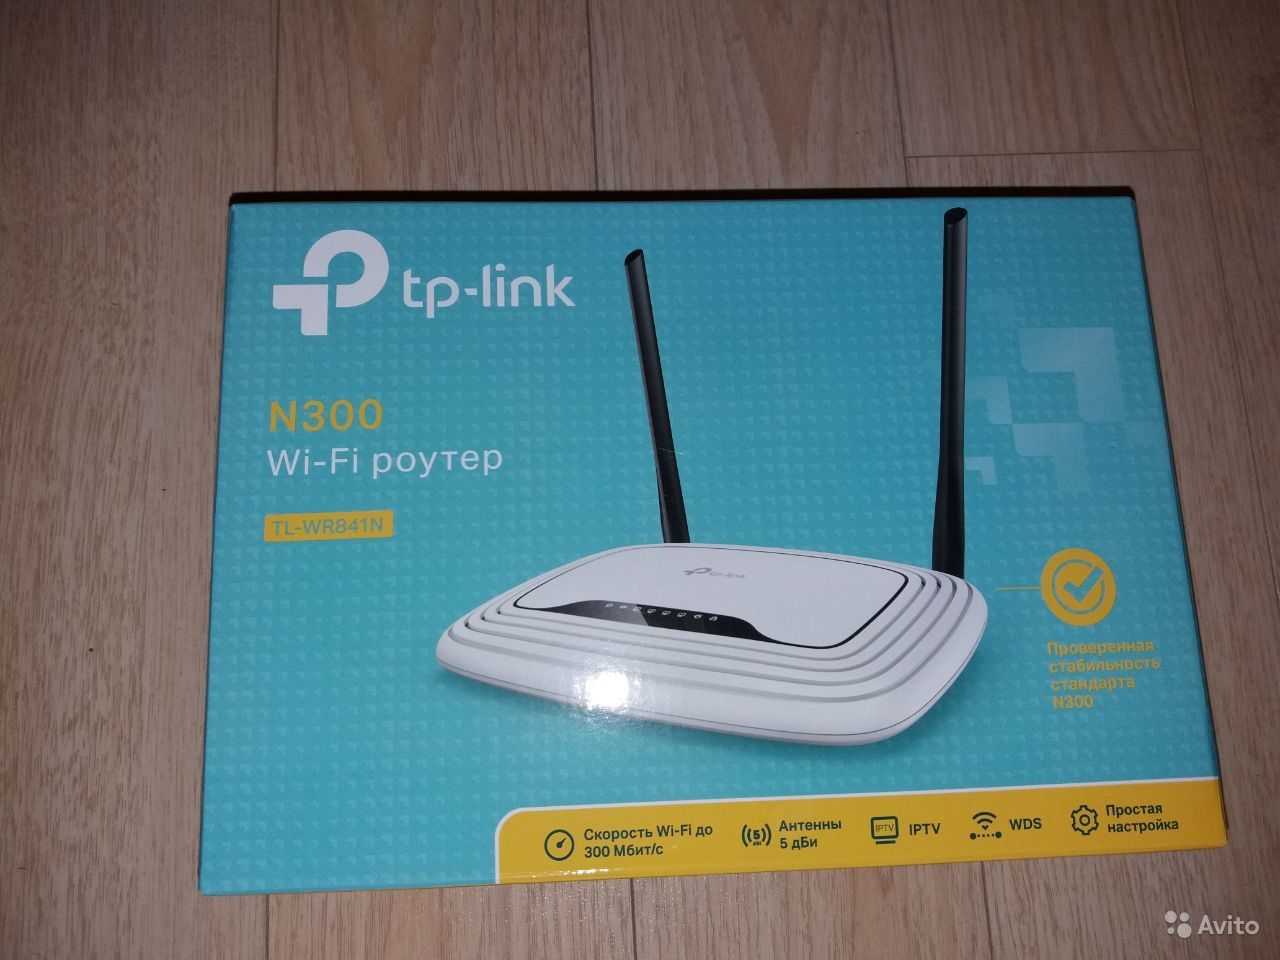 Wi-Fi роутера TP-LINK TL-WR942N - подробные характеристики обзоры видео фото Цены в интернет-магазинах где можно купить wi-fi роутеру TP-LINK TL-WR942N